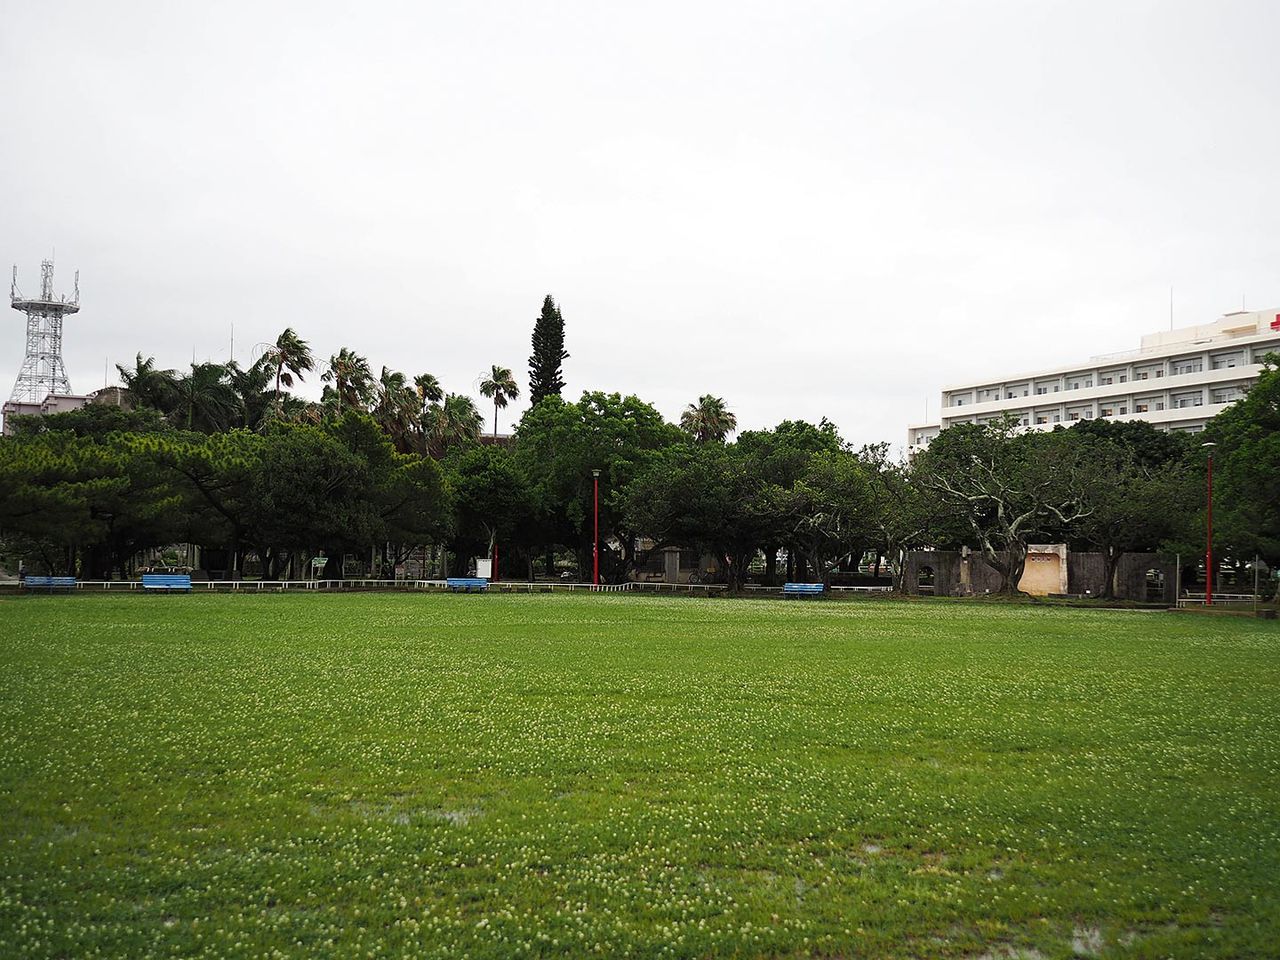 かつて「5・15抗議県民総決起大会」が行われた広場。正面に見える木々の奥には解体予定の那覇市民会館がある